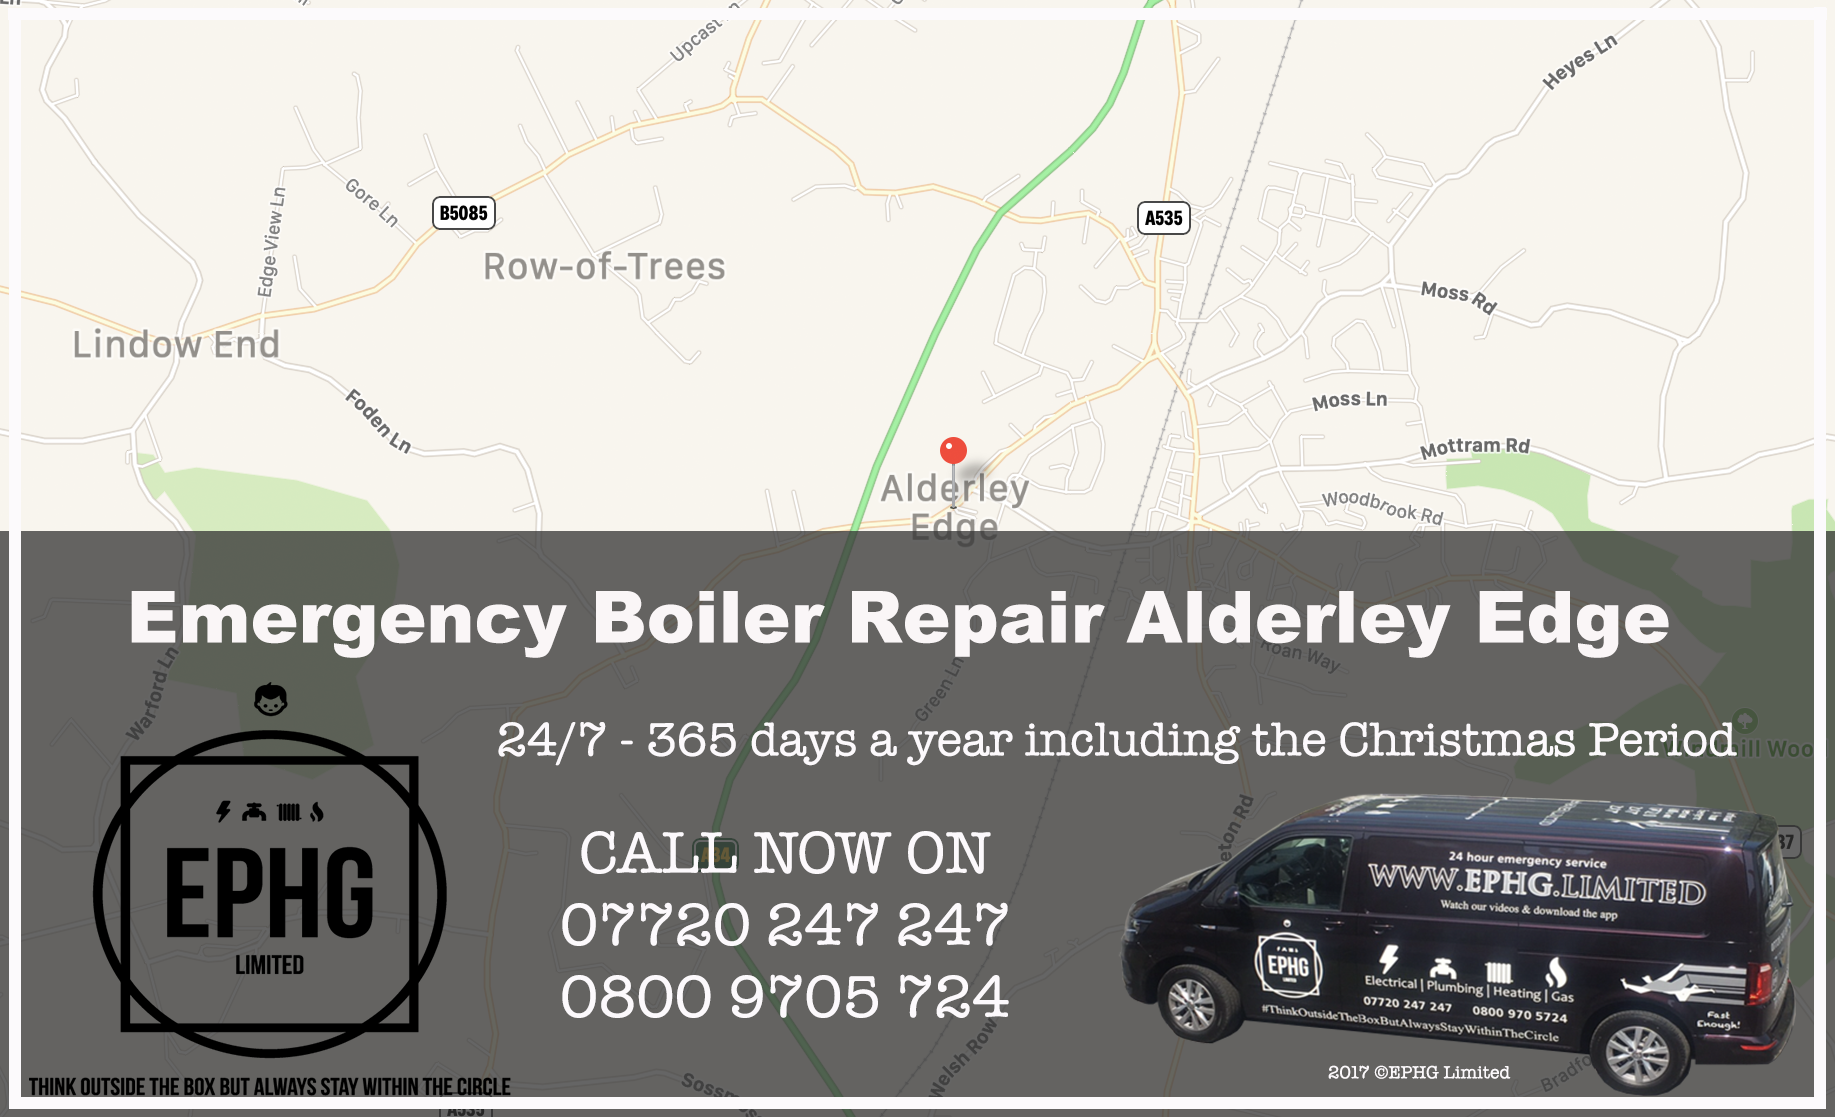 24 Hour Emergency Boiler Repair Alderley Edge